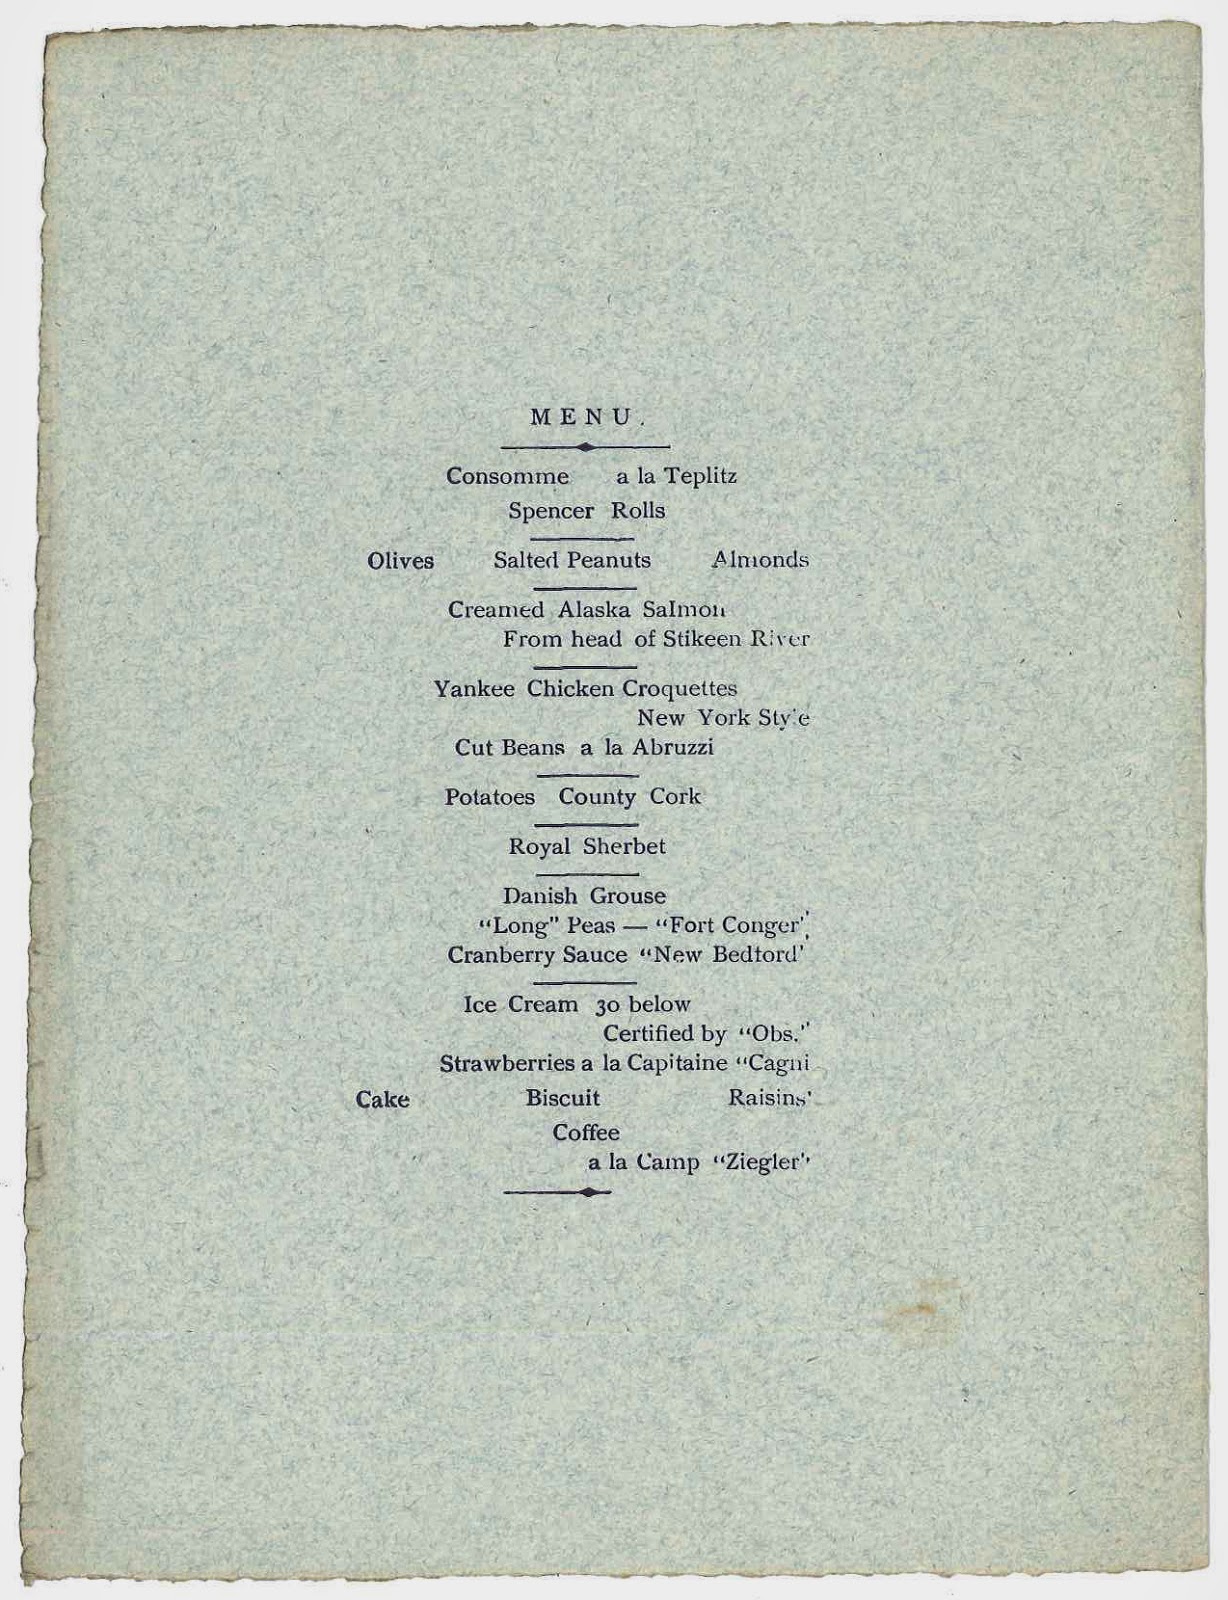 A printed menu.